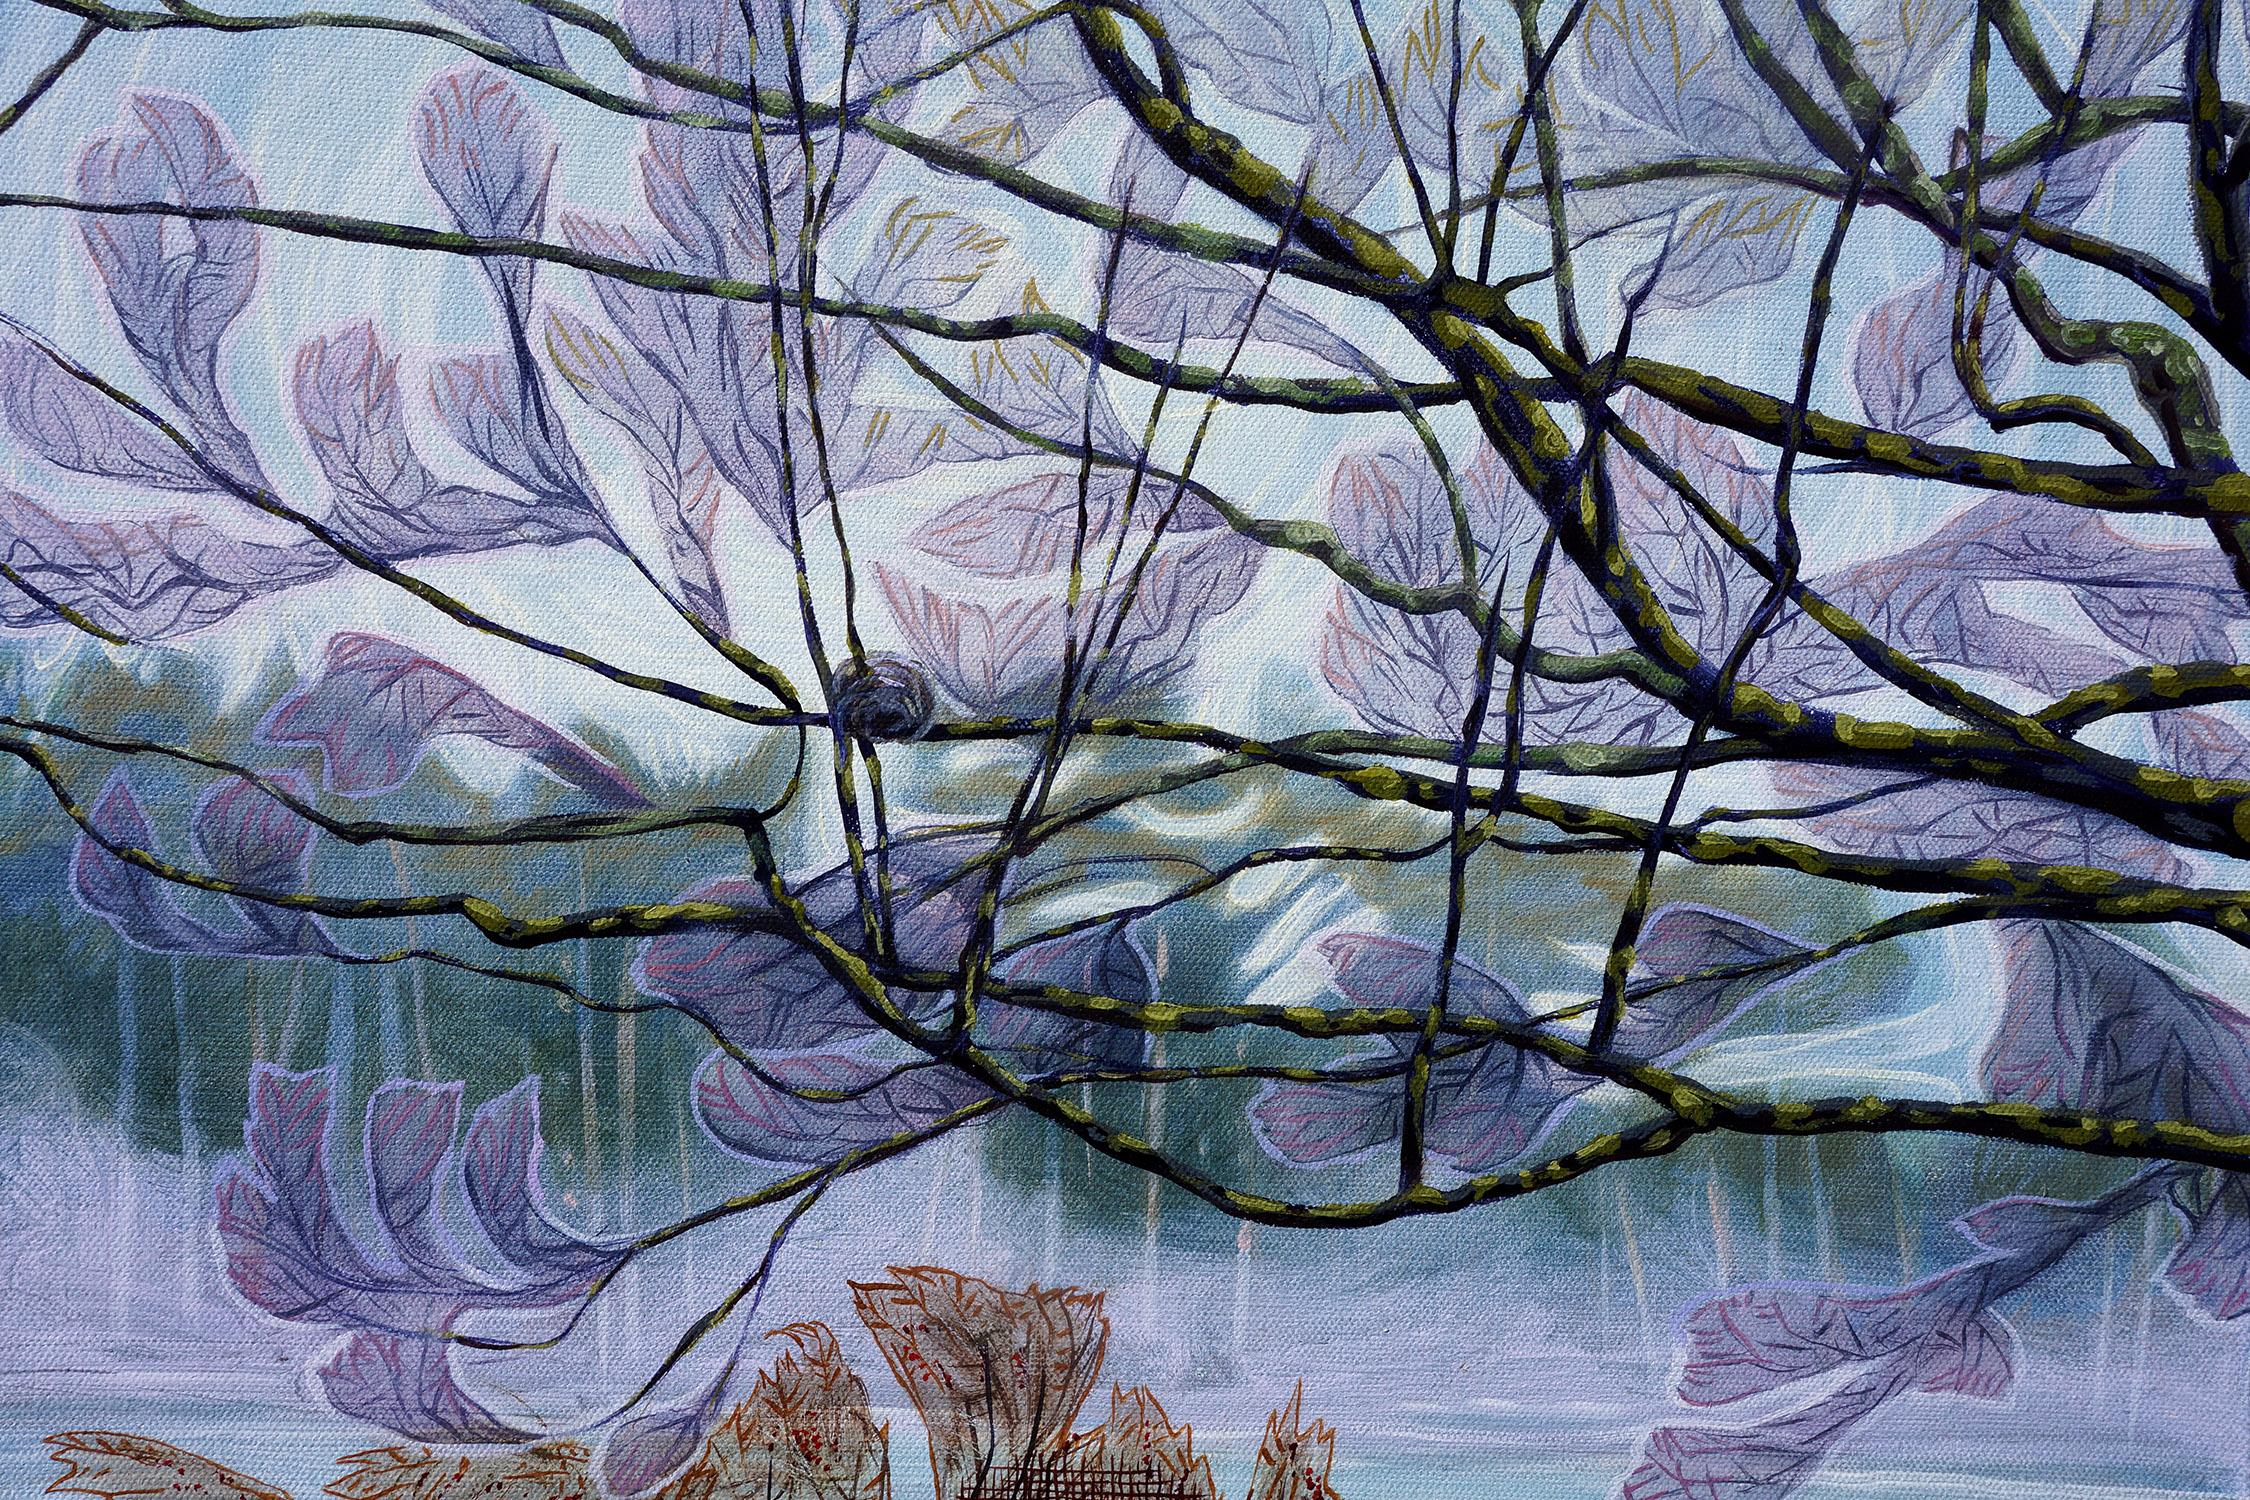 Moody Day at Mohansic Lake, signiertes zeitgenössisches Original-Landschaftsgemälde (Expressionismus), Painting, von Gina Blickenstaff